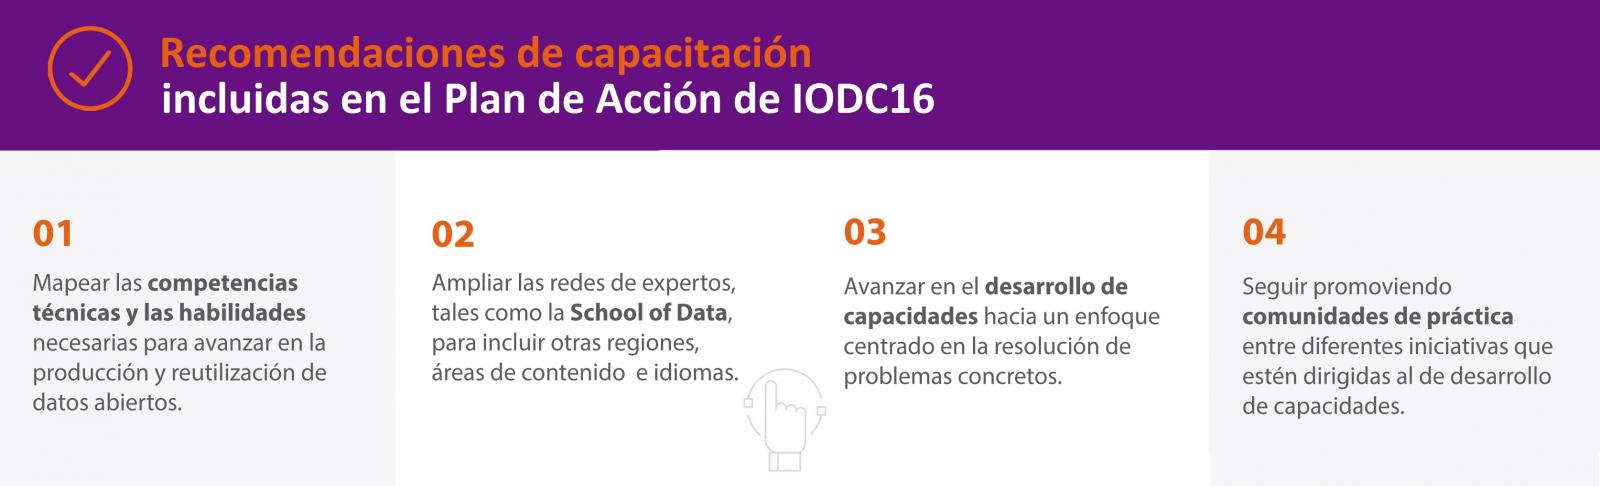 Recomendaciones de catación incluidas en el Plan de Acción de IODC16